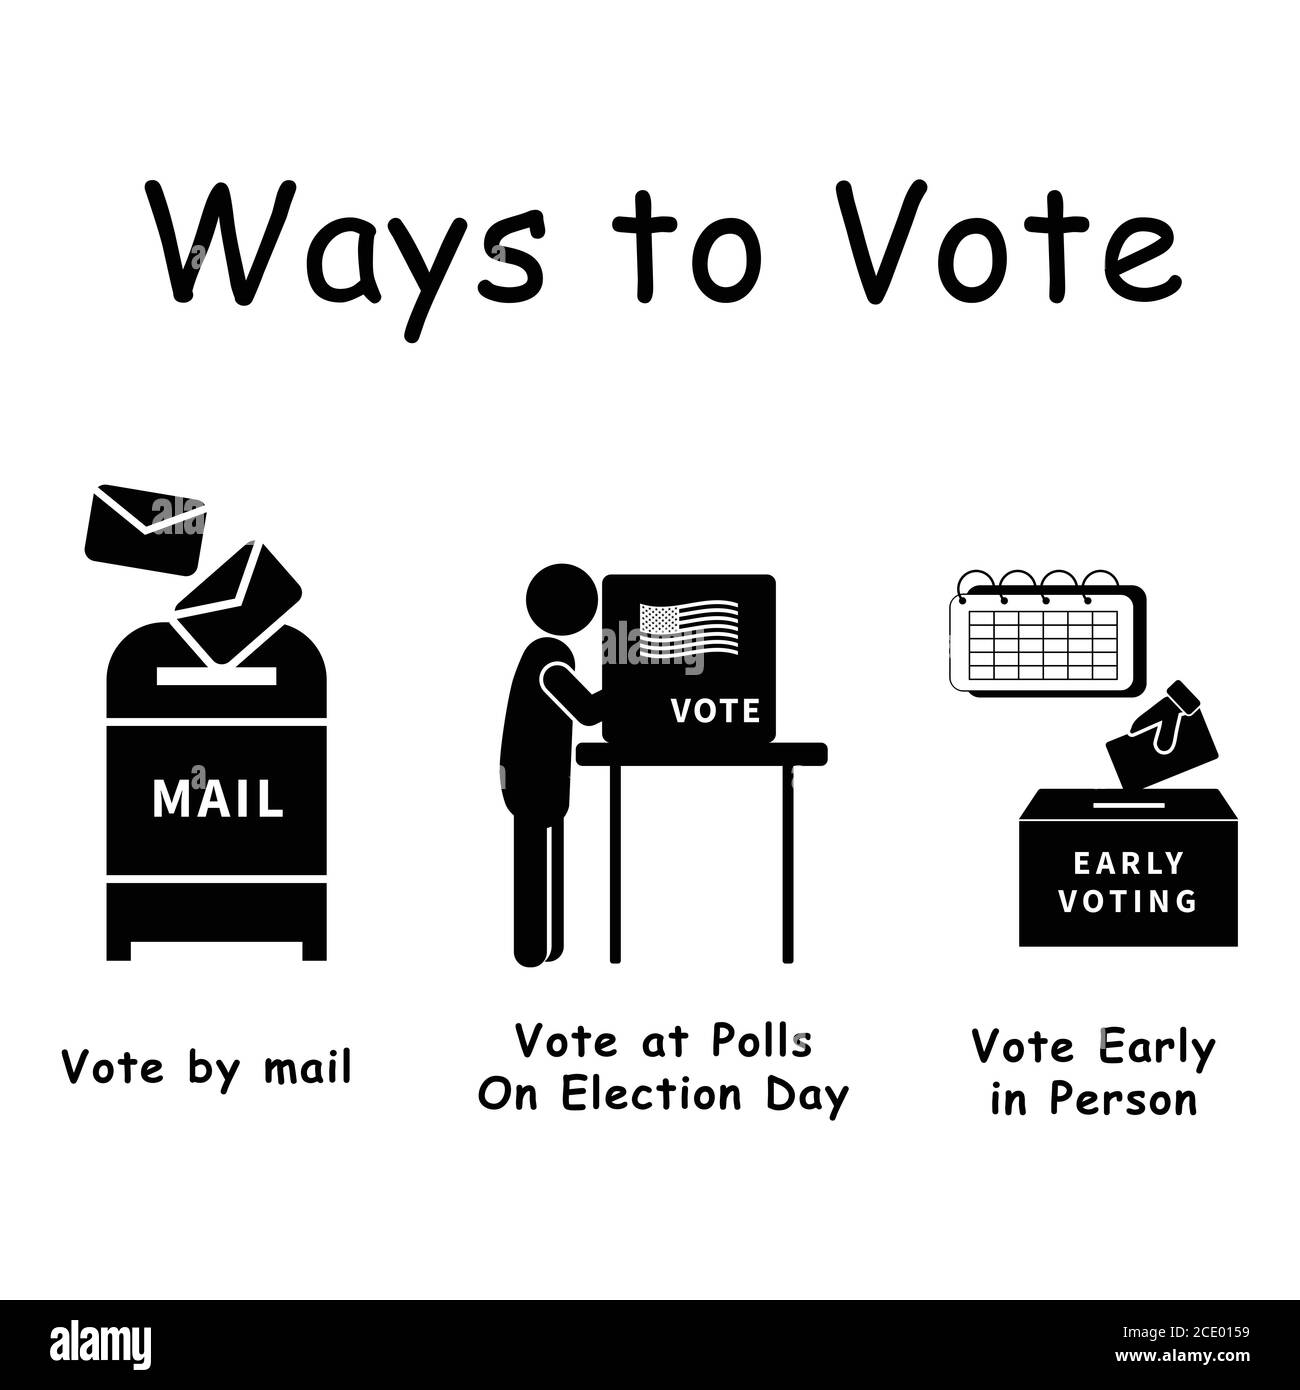 Drei Möglichkeiten zu wählen, Piktogramm, das 3 Weisen darstellt, die Wähler für Wahlwahl wählen können. Per Post, persönlich bei Umfragen, frühe Abstimmung Schwarz-Weiß EPS Vect Stock Vektor